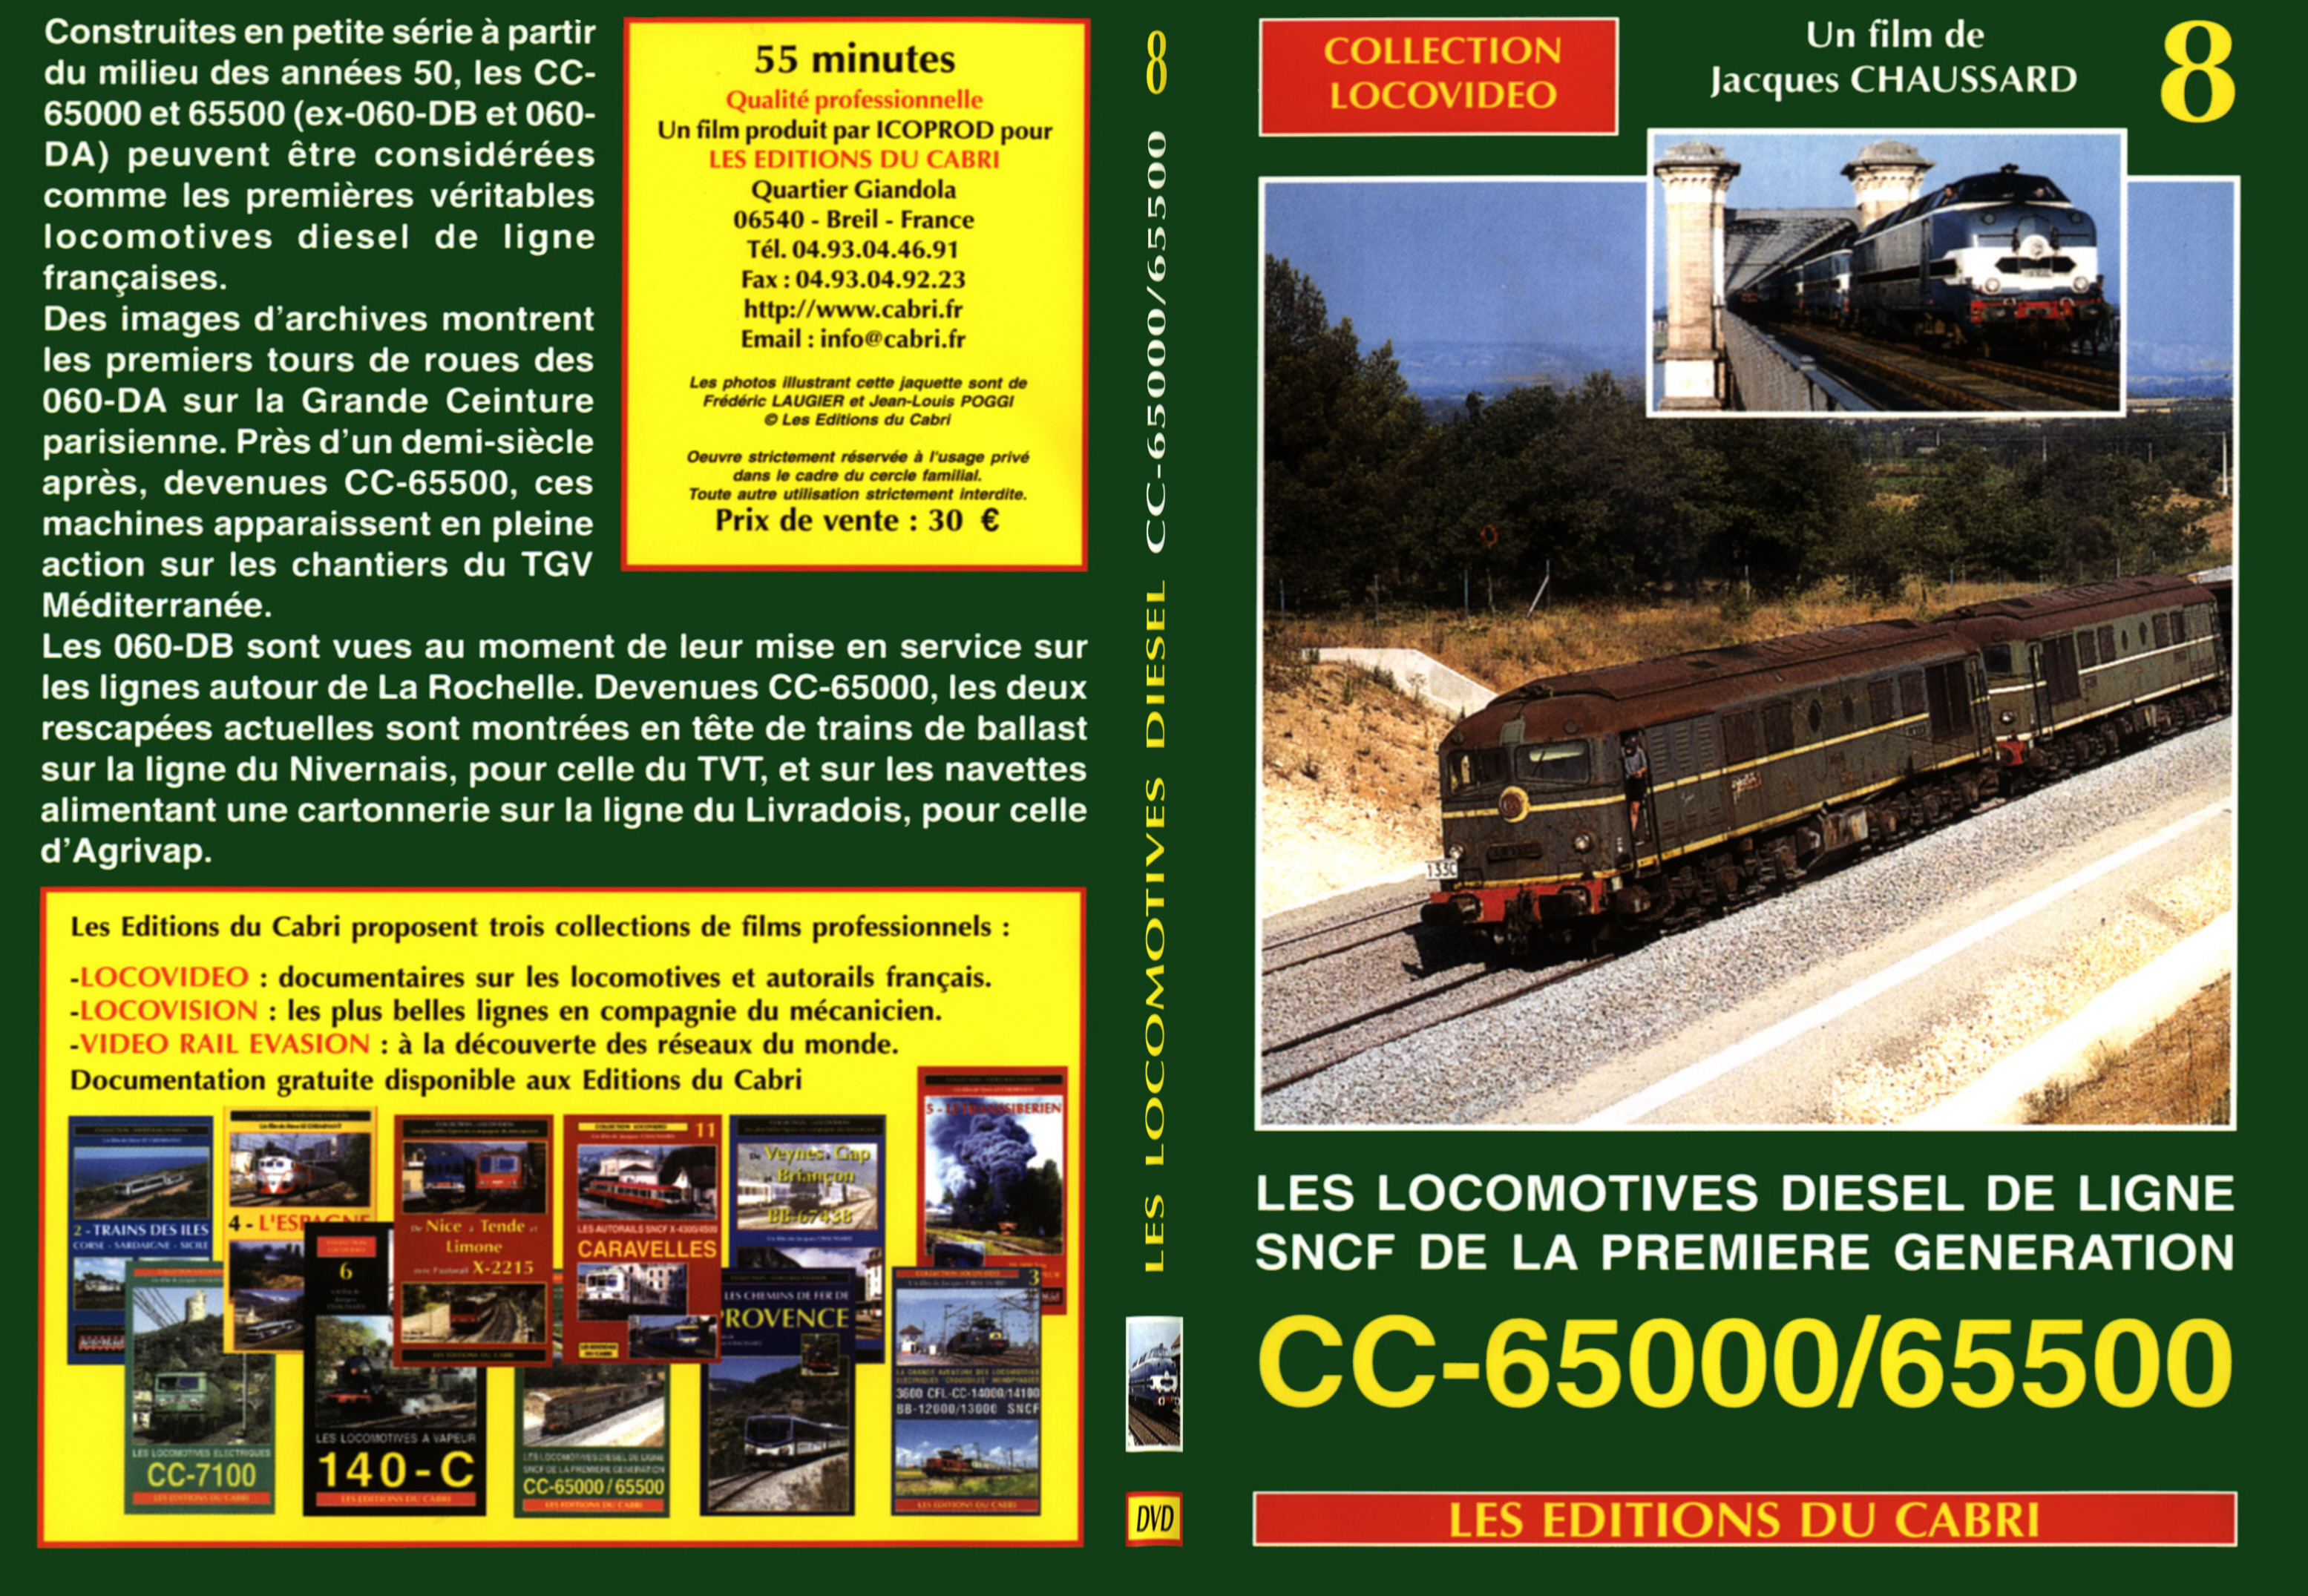 Jaquette DVD Les locomotives diesel de ligne SNCF de la premiere generation CC-65000 et CC-65